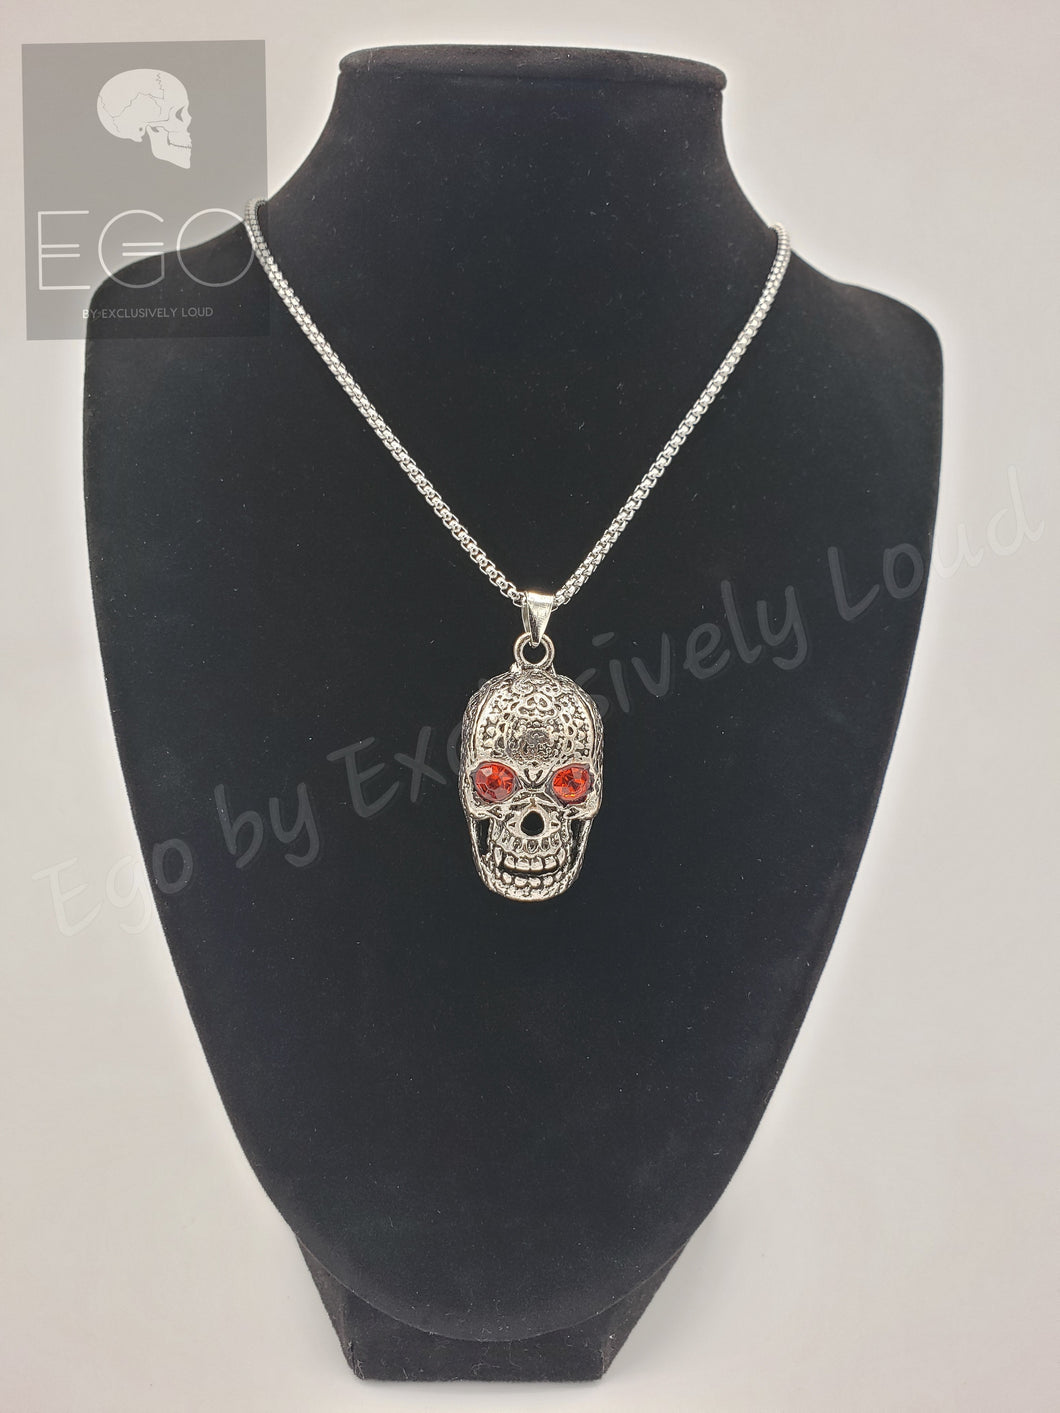 Ego Red Eyed Skull Necklace